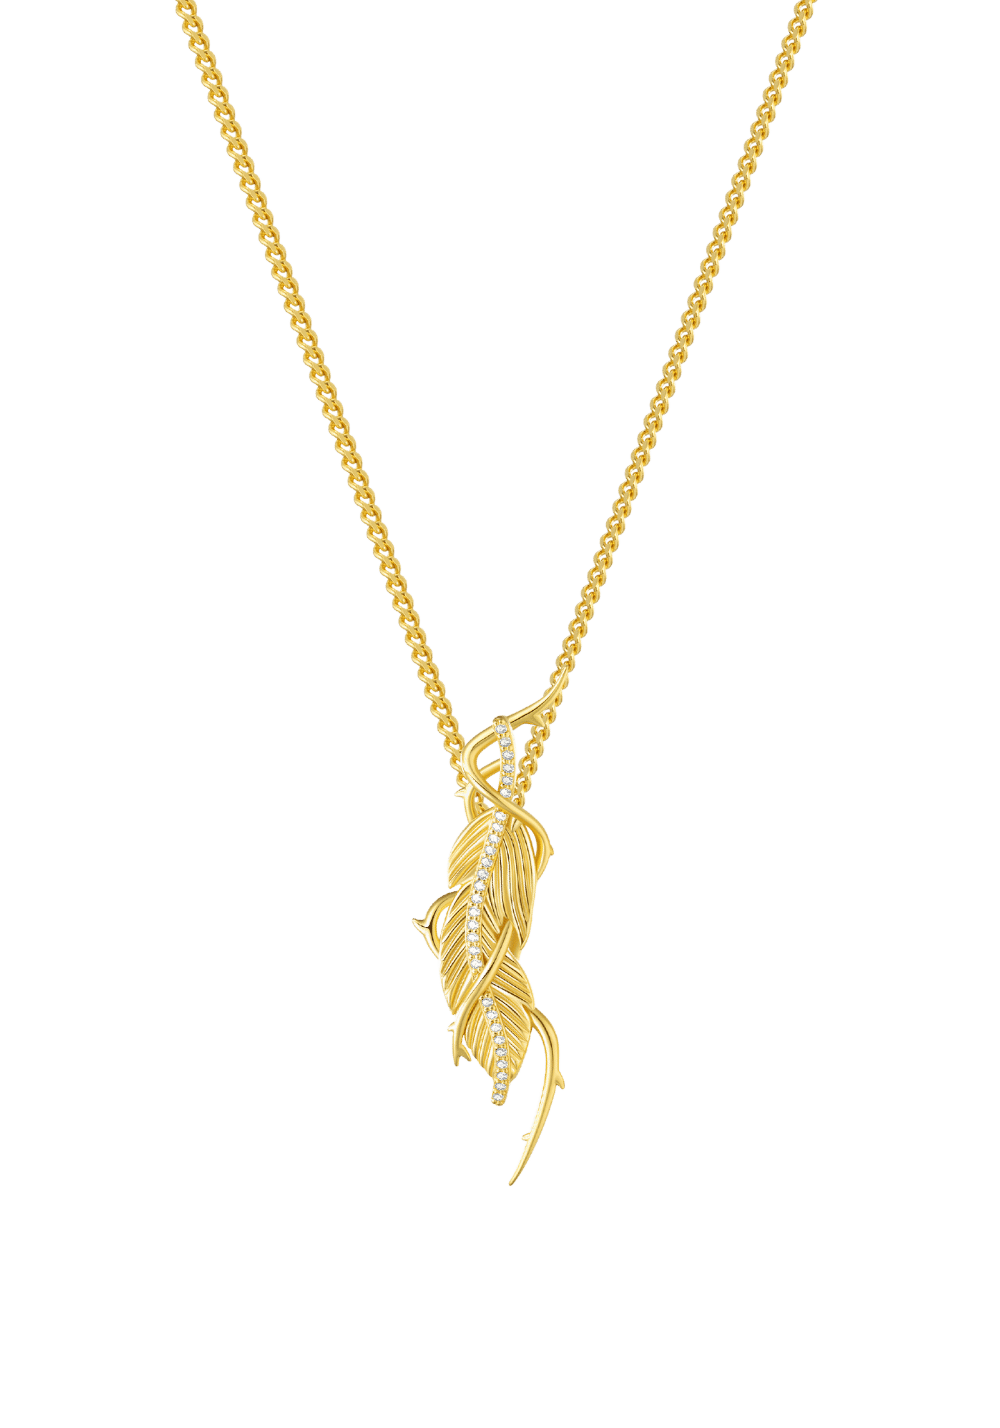 Black Phoenix Feather Necklace - PSYLOS 1, Black Phoenix Feather Necklace, Accessories, The Last Redemption, PSYLOS 1